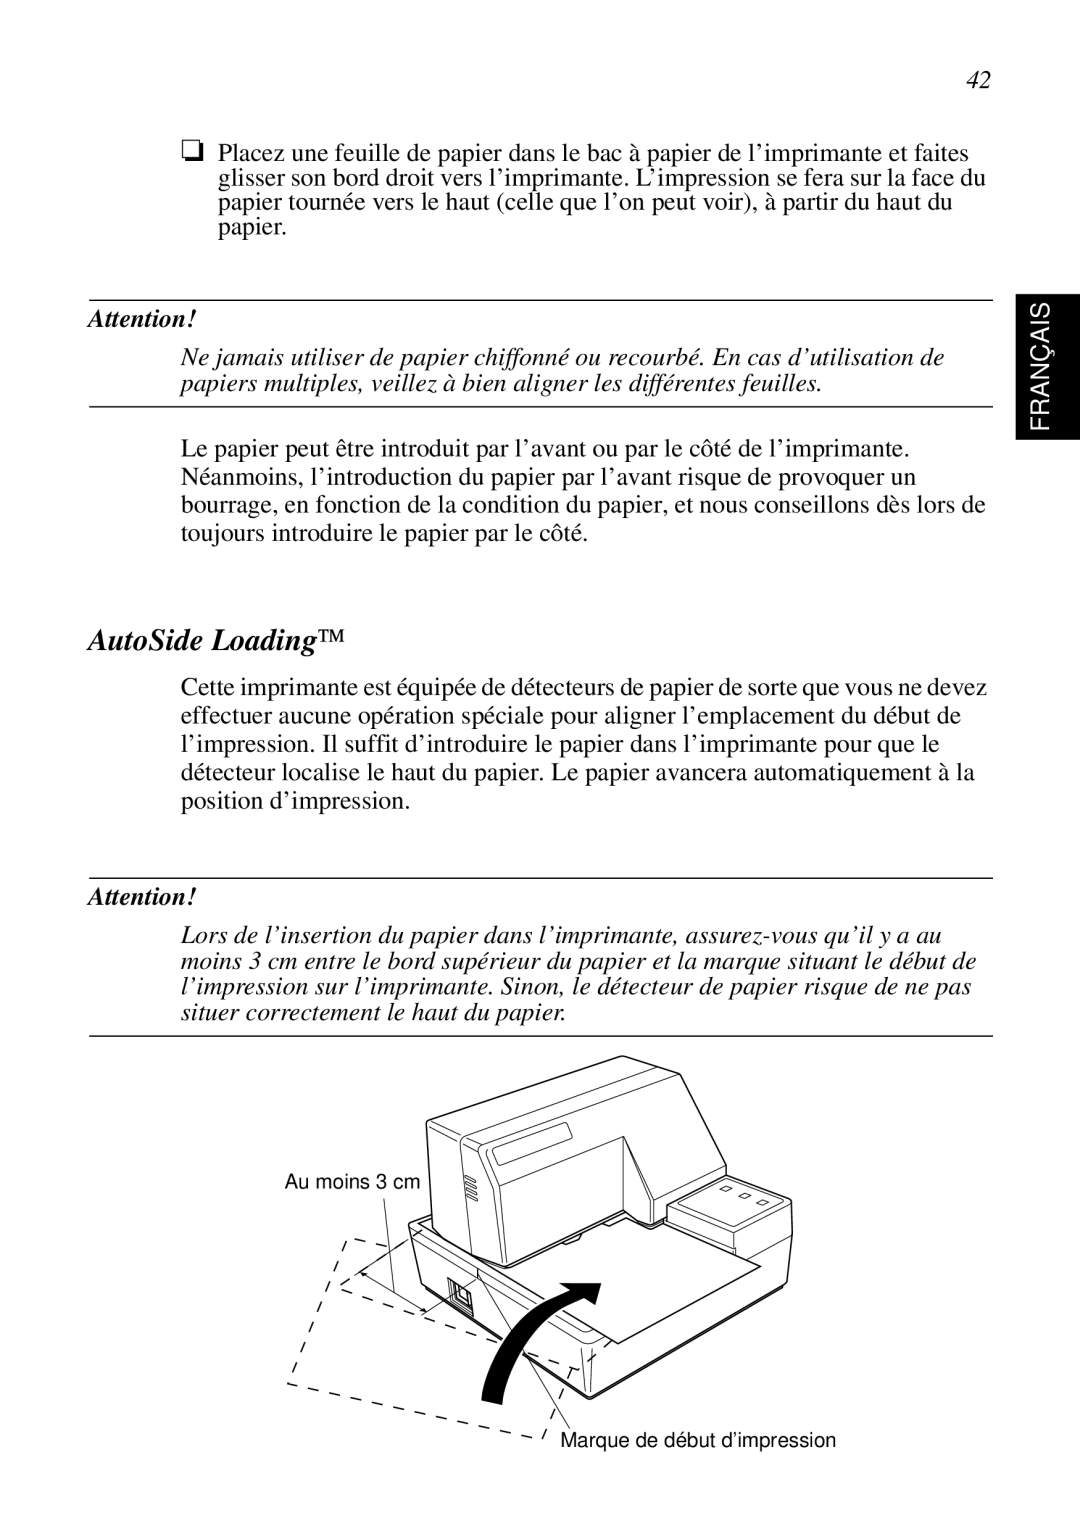 Star Micronics SP298 user manual AutoSide Loading, Français, Au moins 3 cm, Marque de début d’impression 